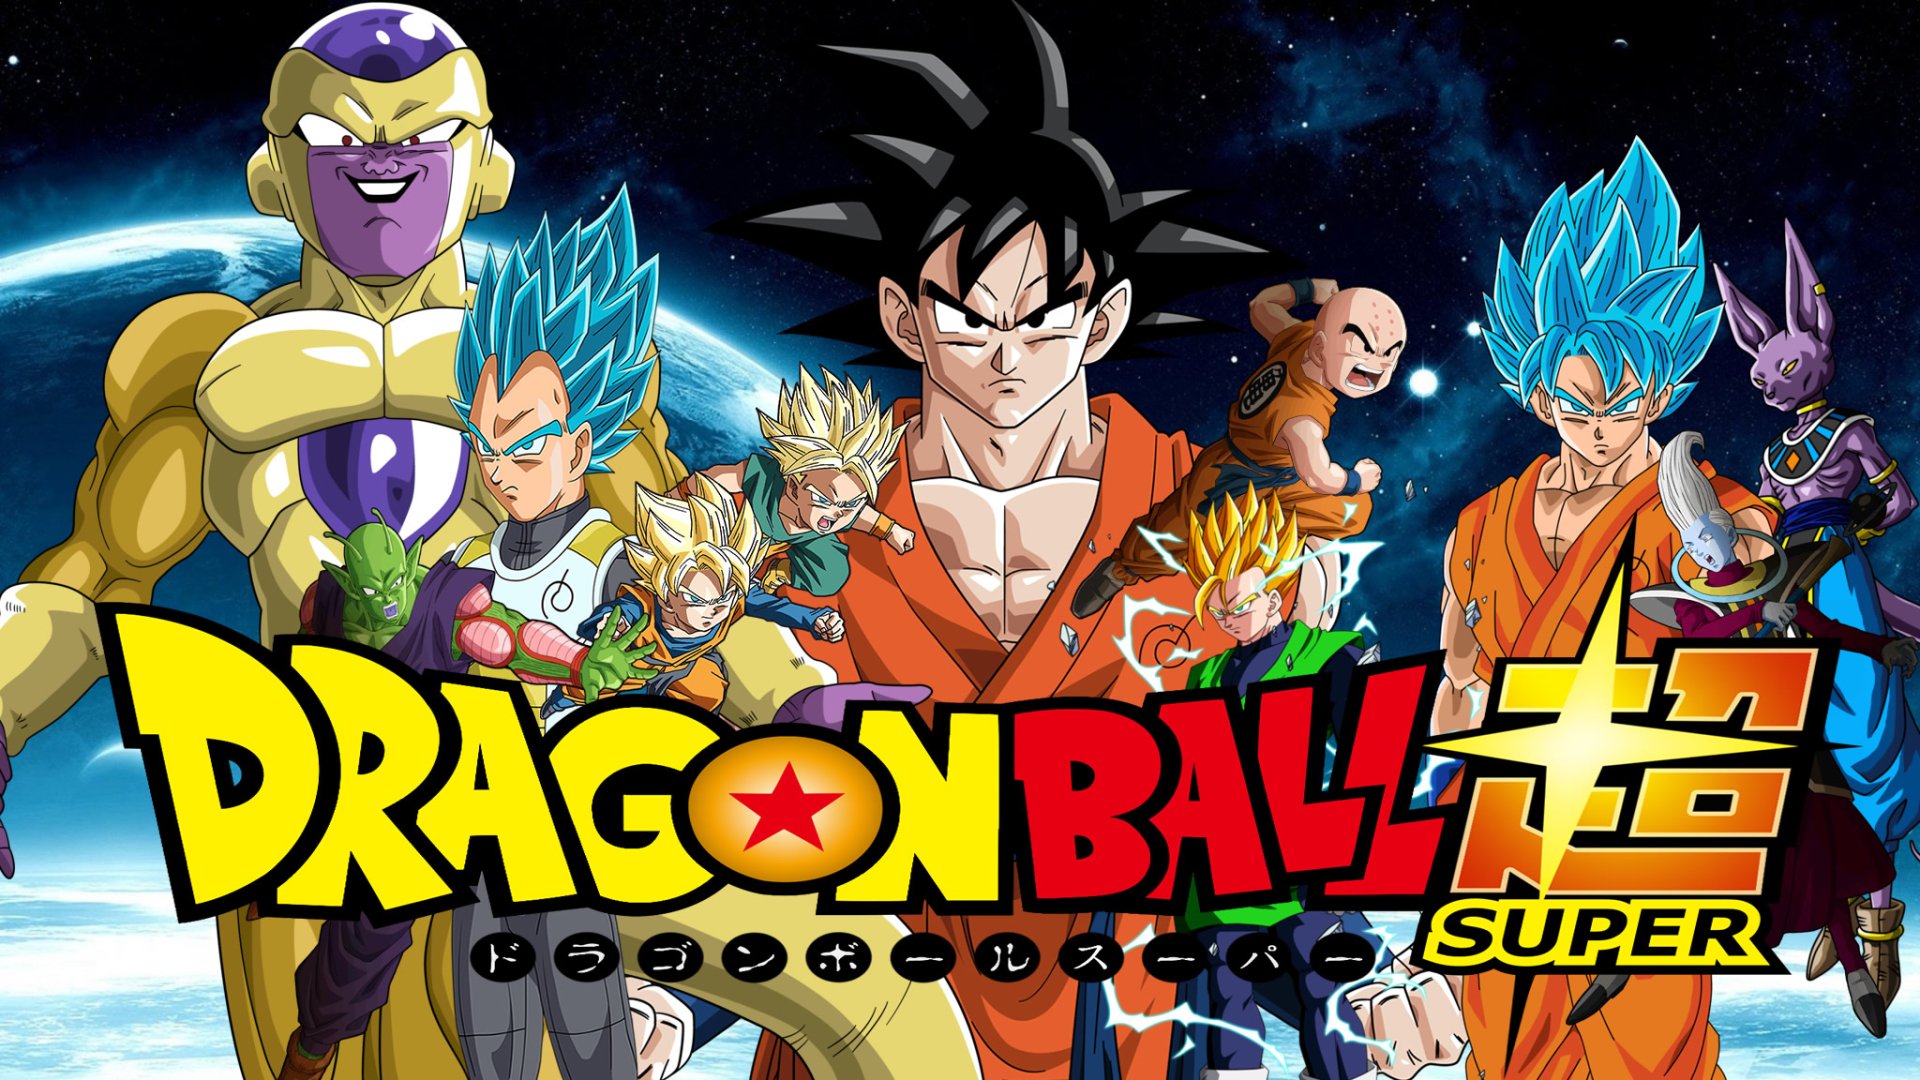 ▷ Dragon Ball Super: Imágenes y Fondos de Pantalla ¡Mega Galería! | Fondos  de Pantalla